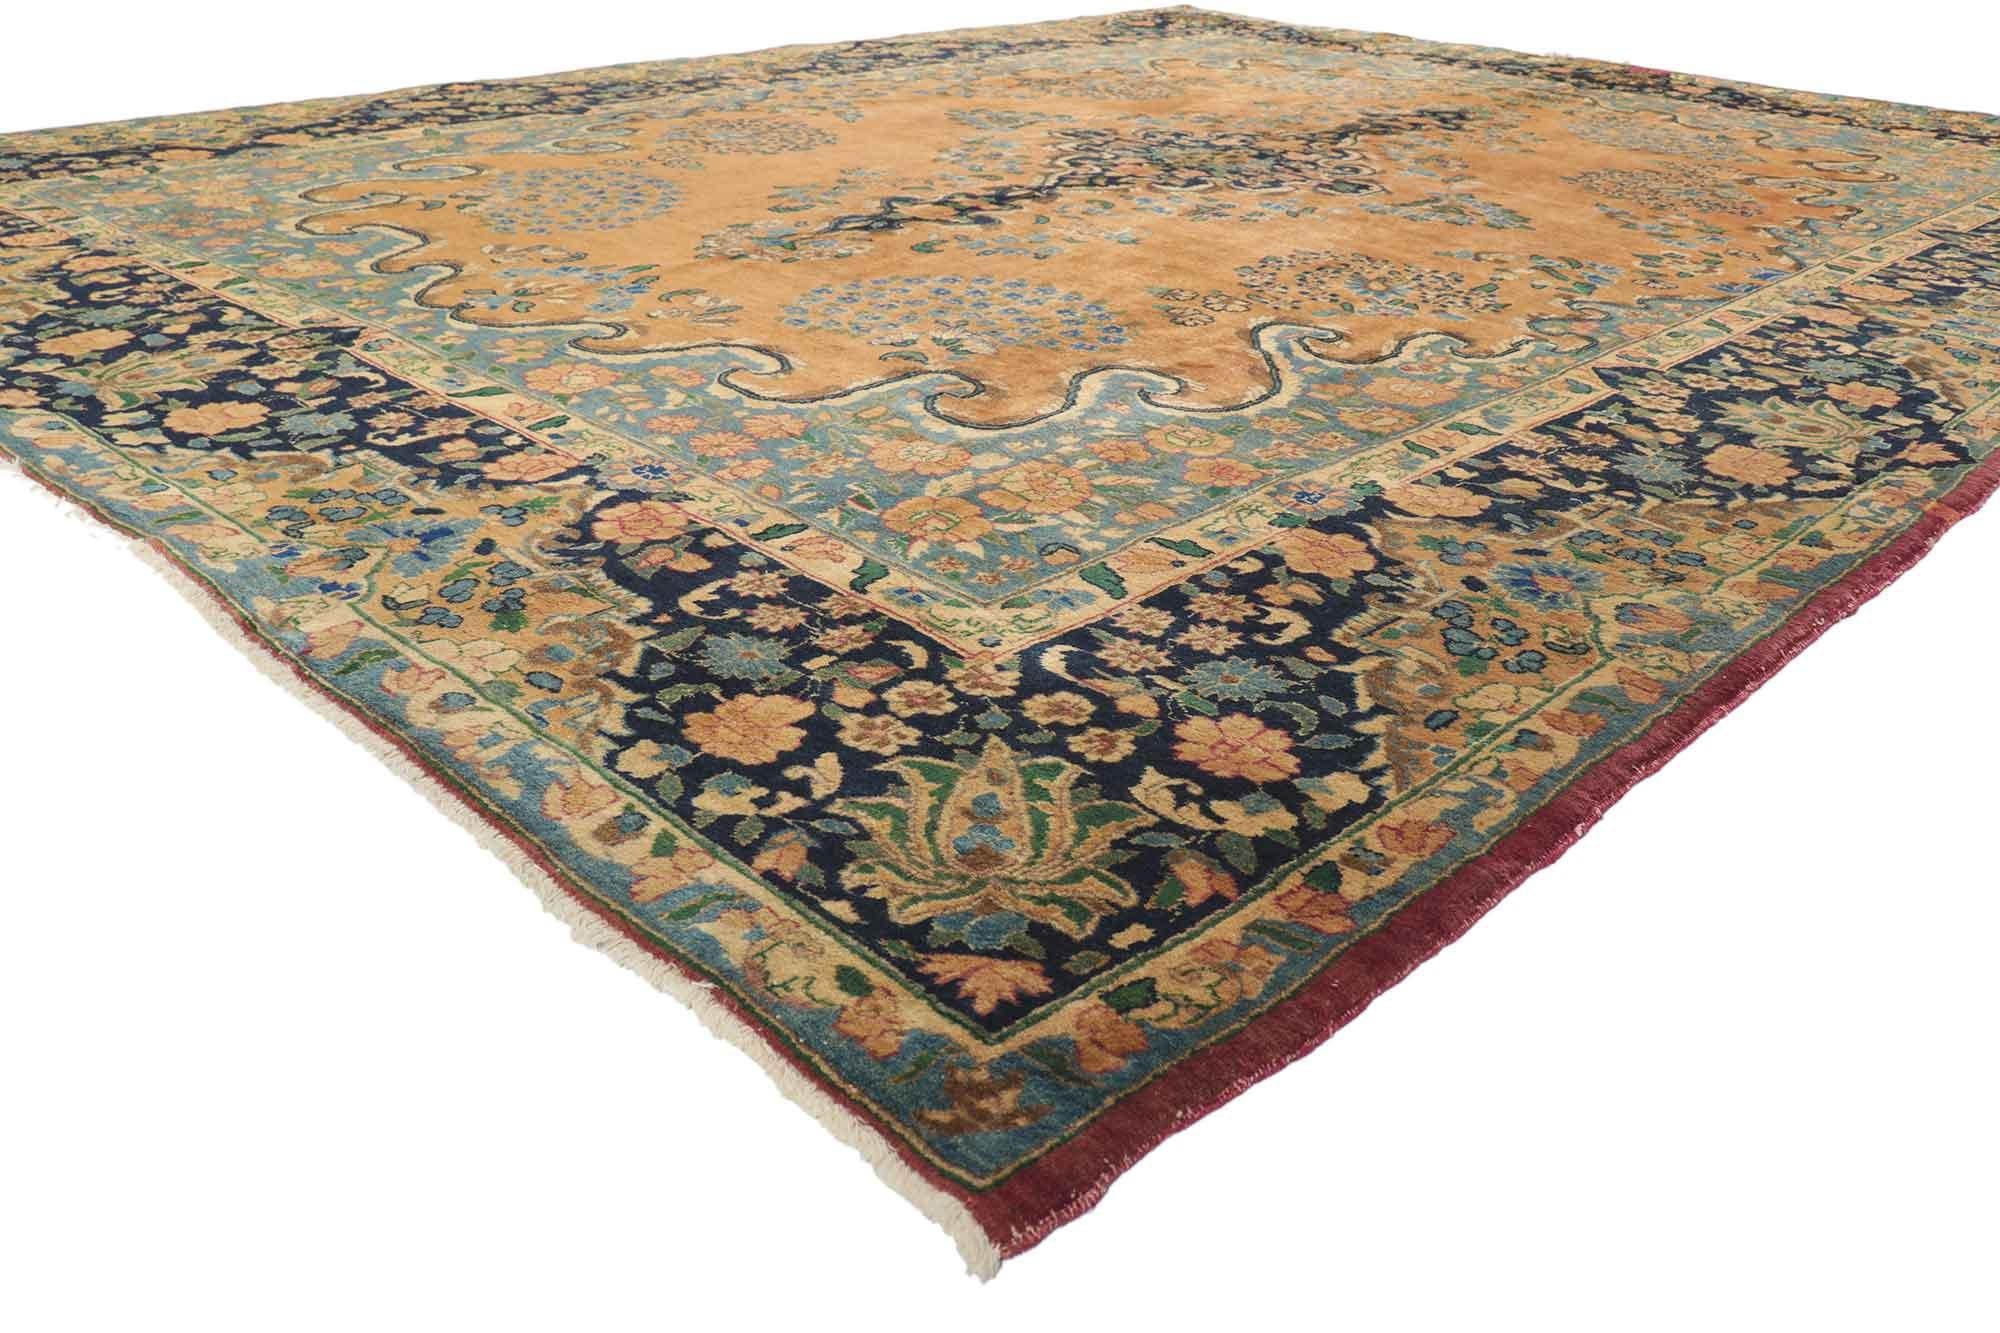 76324 Persischer Mashhad-Teppich im Arabesken-Barock-Regency-Stil. Dieser handgeknüpfte alte persische Mashhad-Teppich aus Wolle zeigt ein typisches Mashhad-Medaillon mit kleinen blühenden Blumensträußen auf einem karamellfarbenen Feld. Das